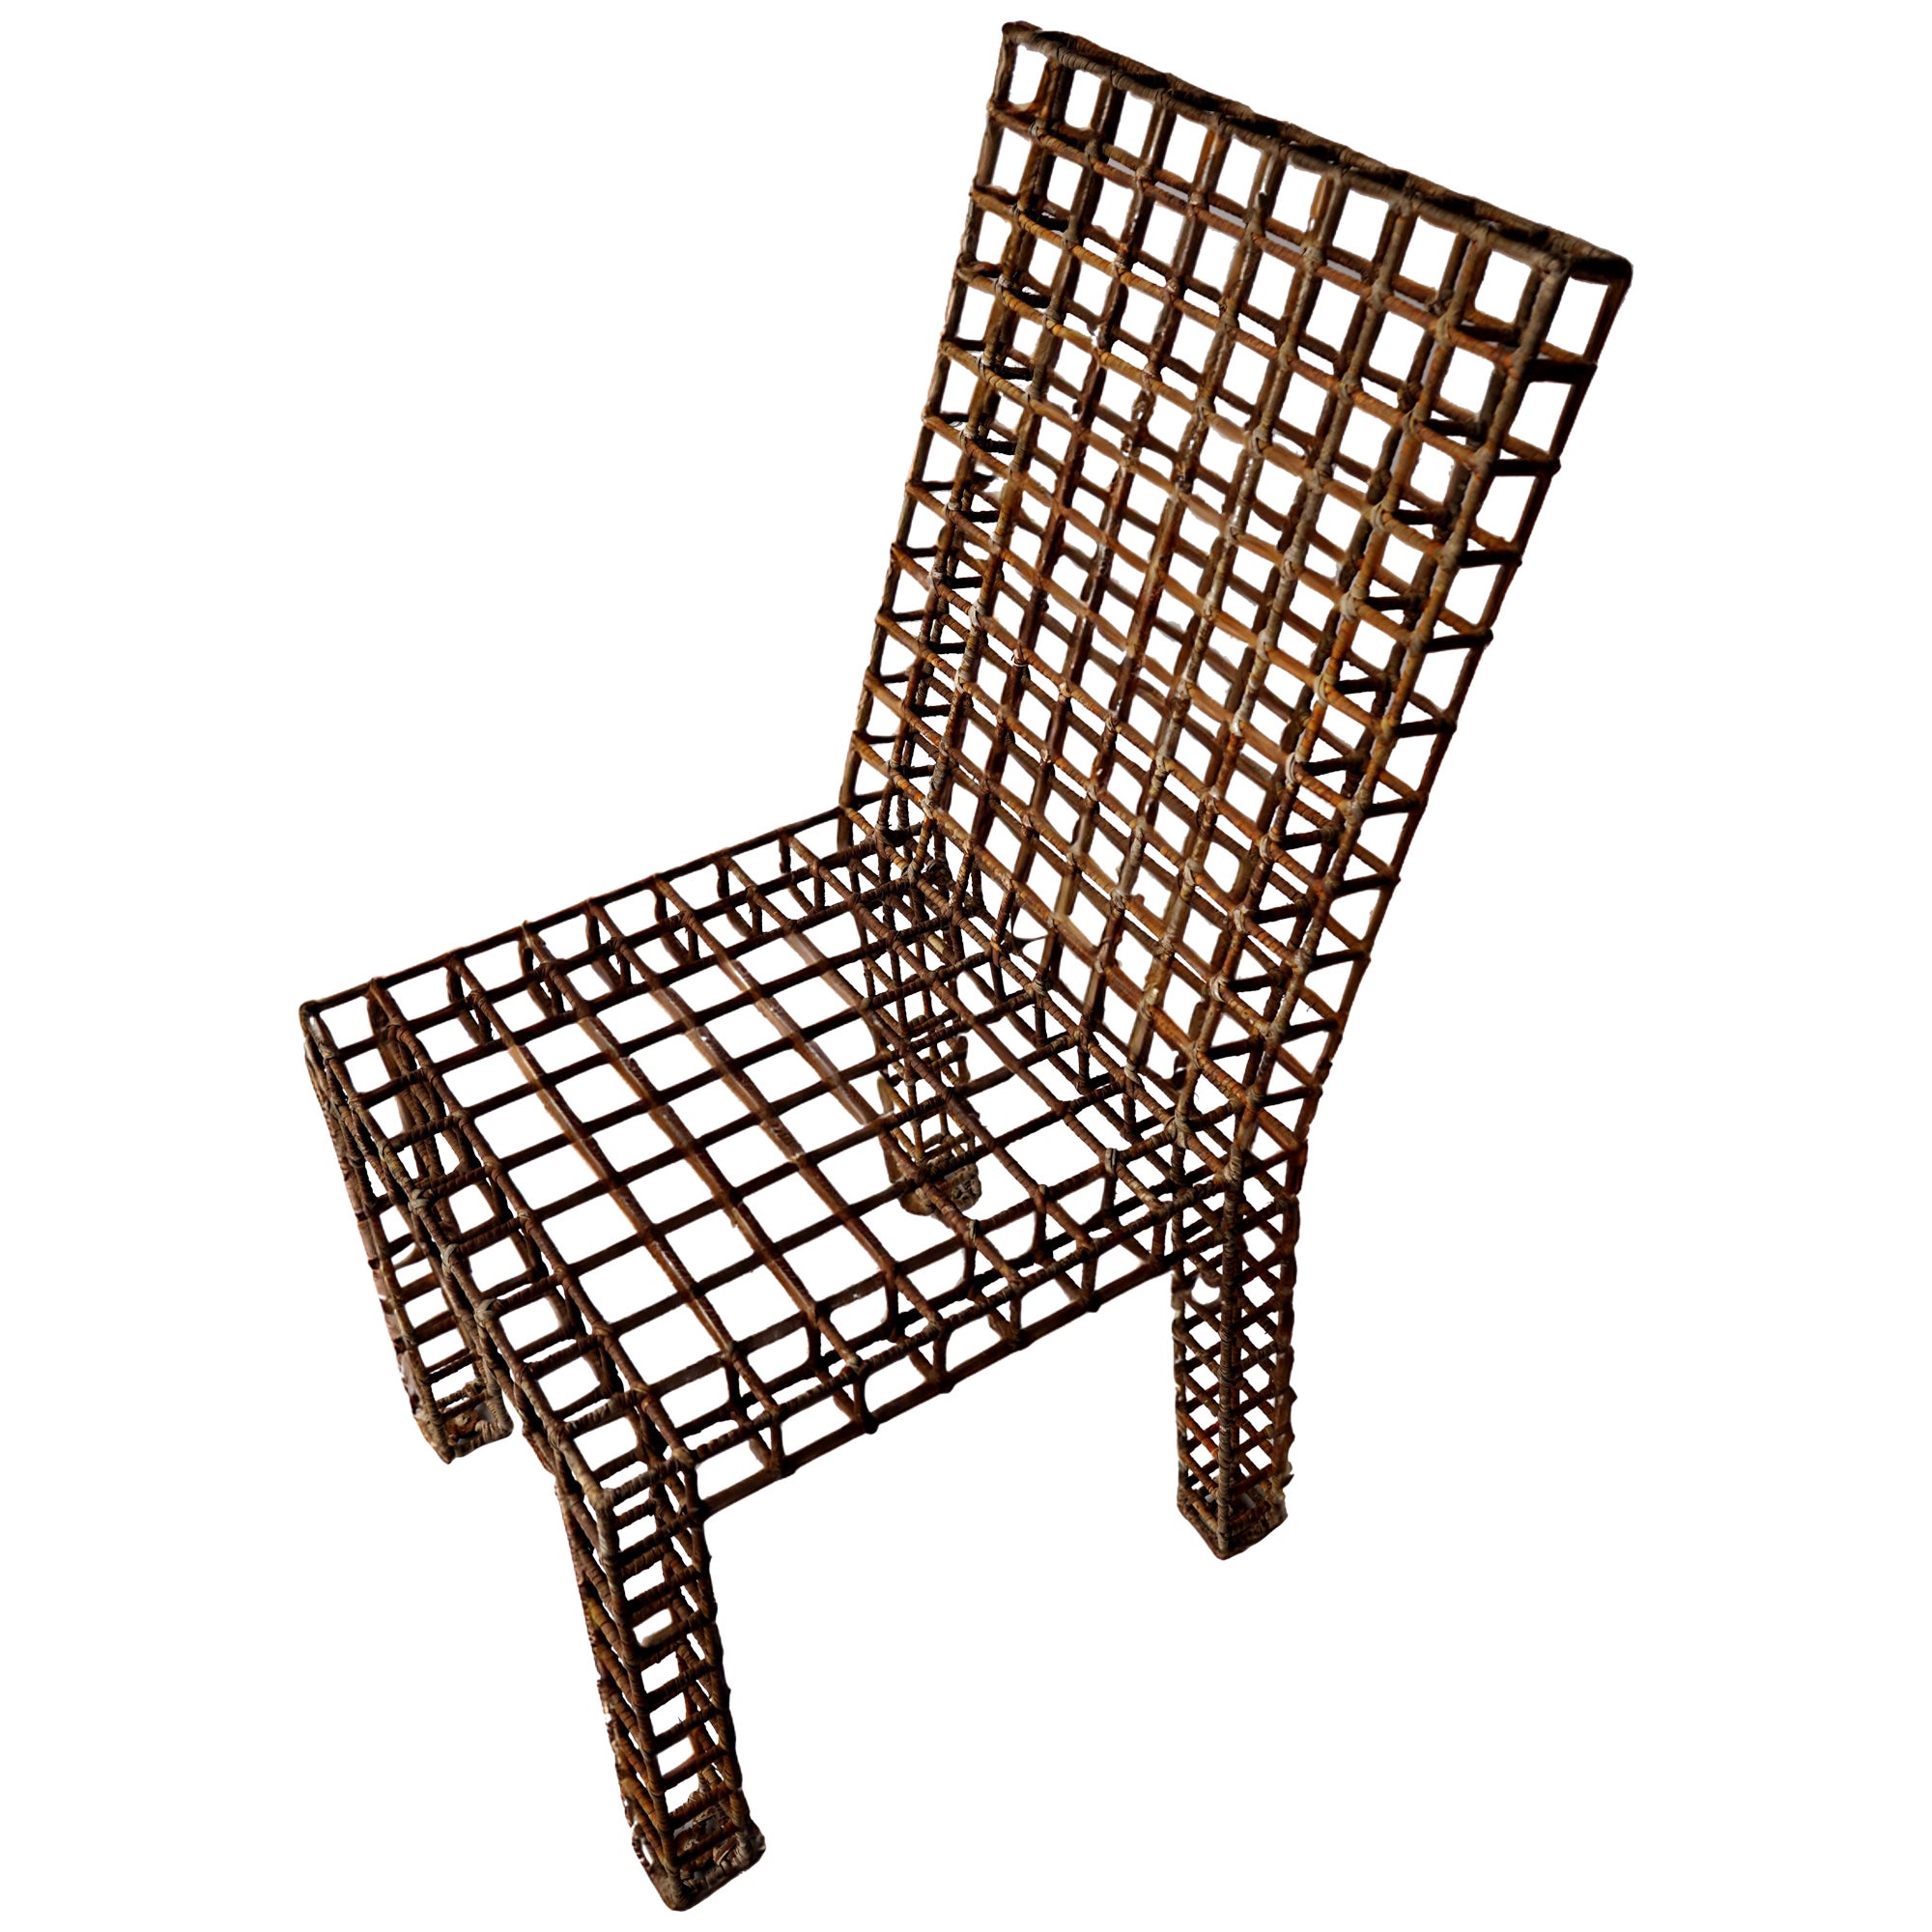 Stuhl mit Gitter aus Metall und Rattan (6 verfügbar)